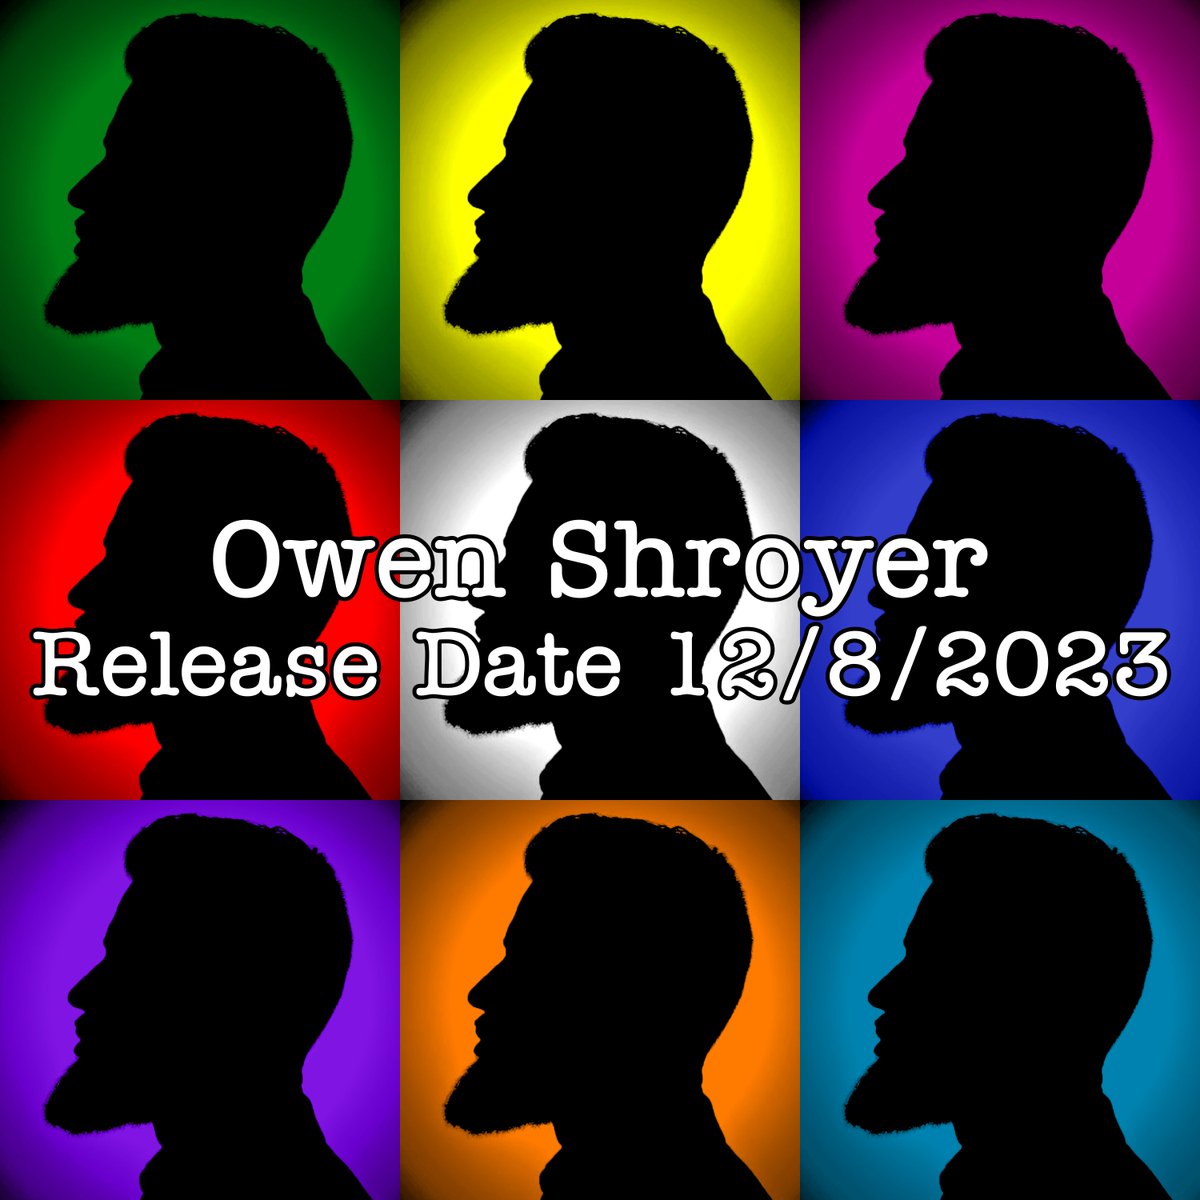 #Update #OwenShroyer
DECEMBER 8TH RELEASE DATE! 
#LFG @OwenShroyer1776 @owenly_fans @realchasegeiser @Helenagibs @ZyroFoxtrot @TiMLassley